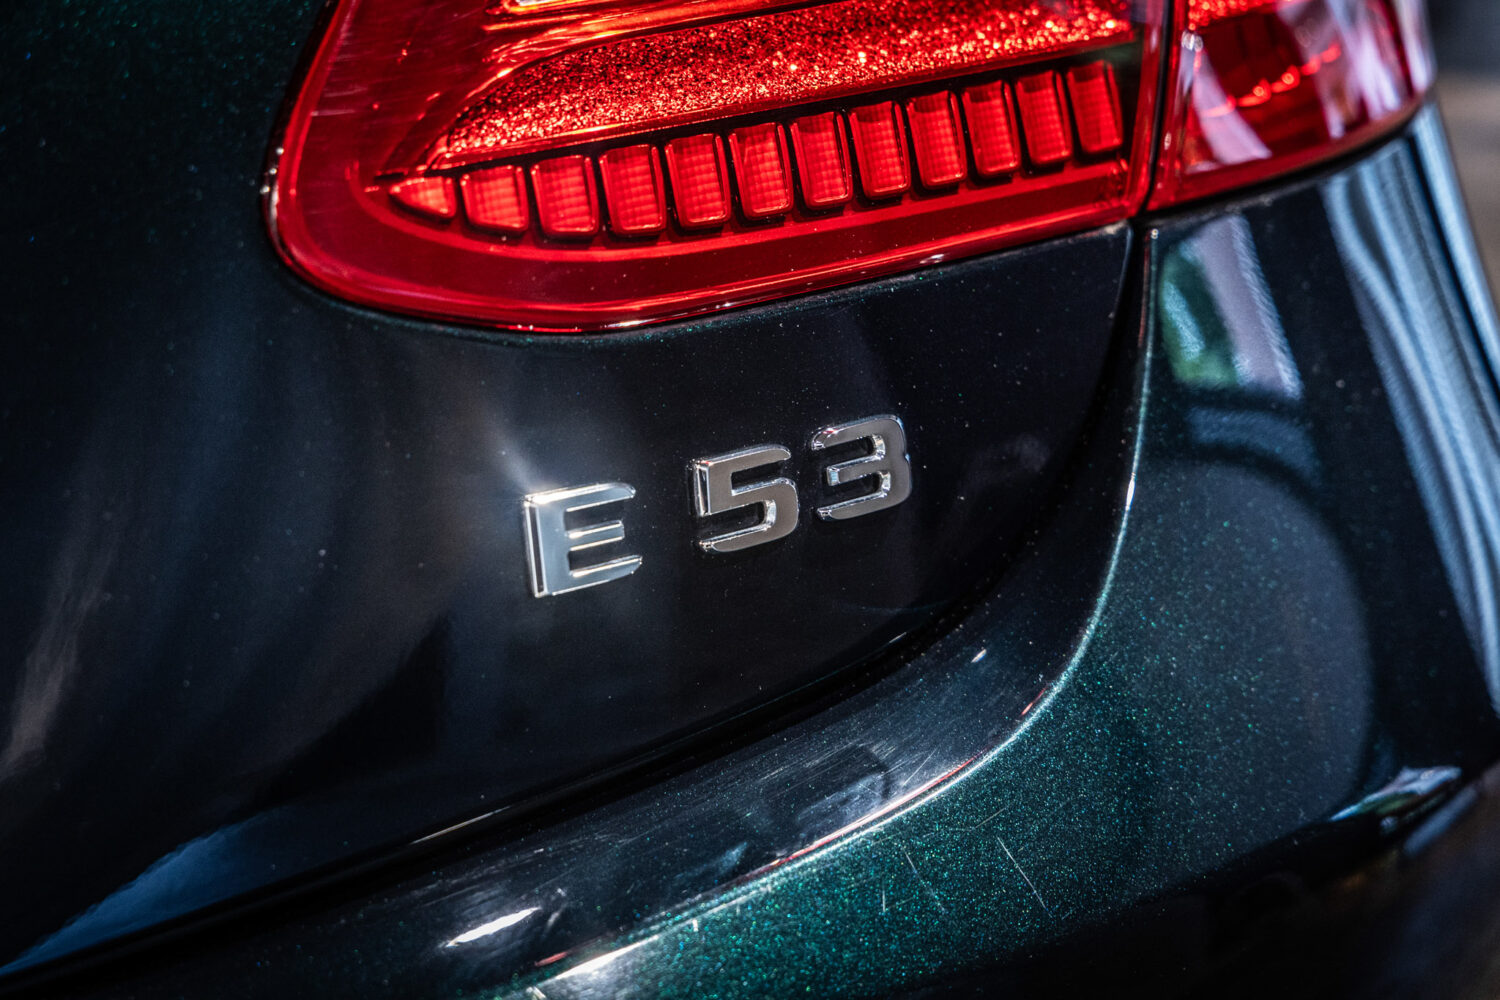 E53 4マチックプラス カブリオレ 4WD